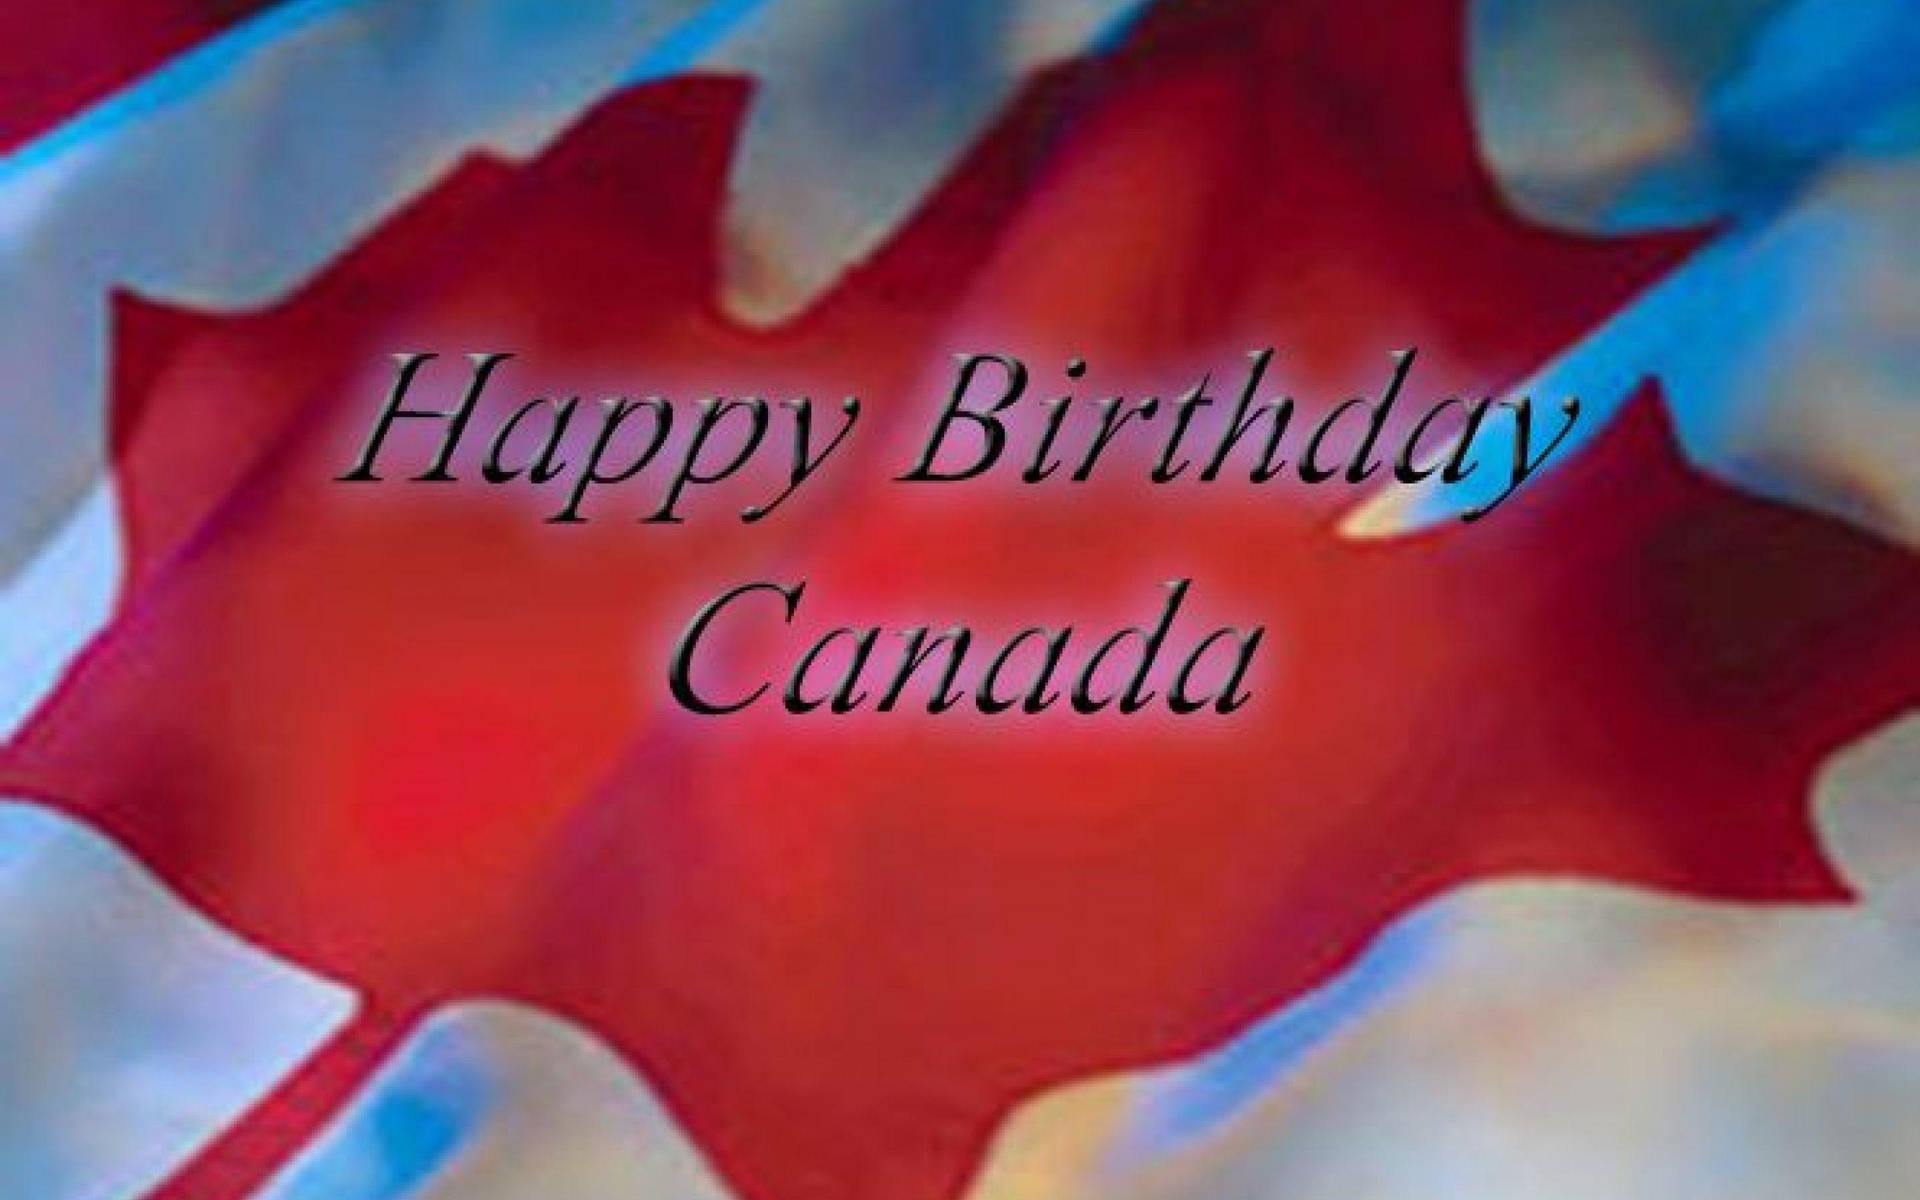 Canada Birth Day